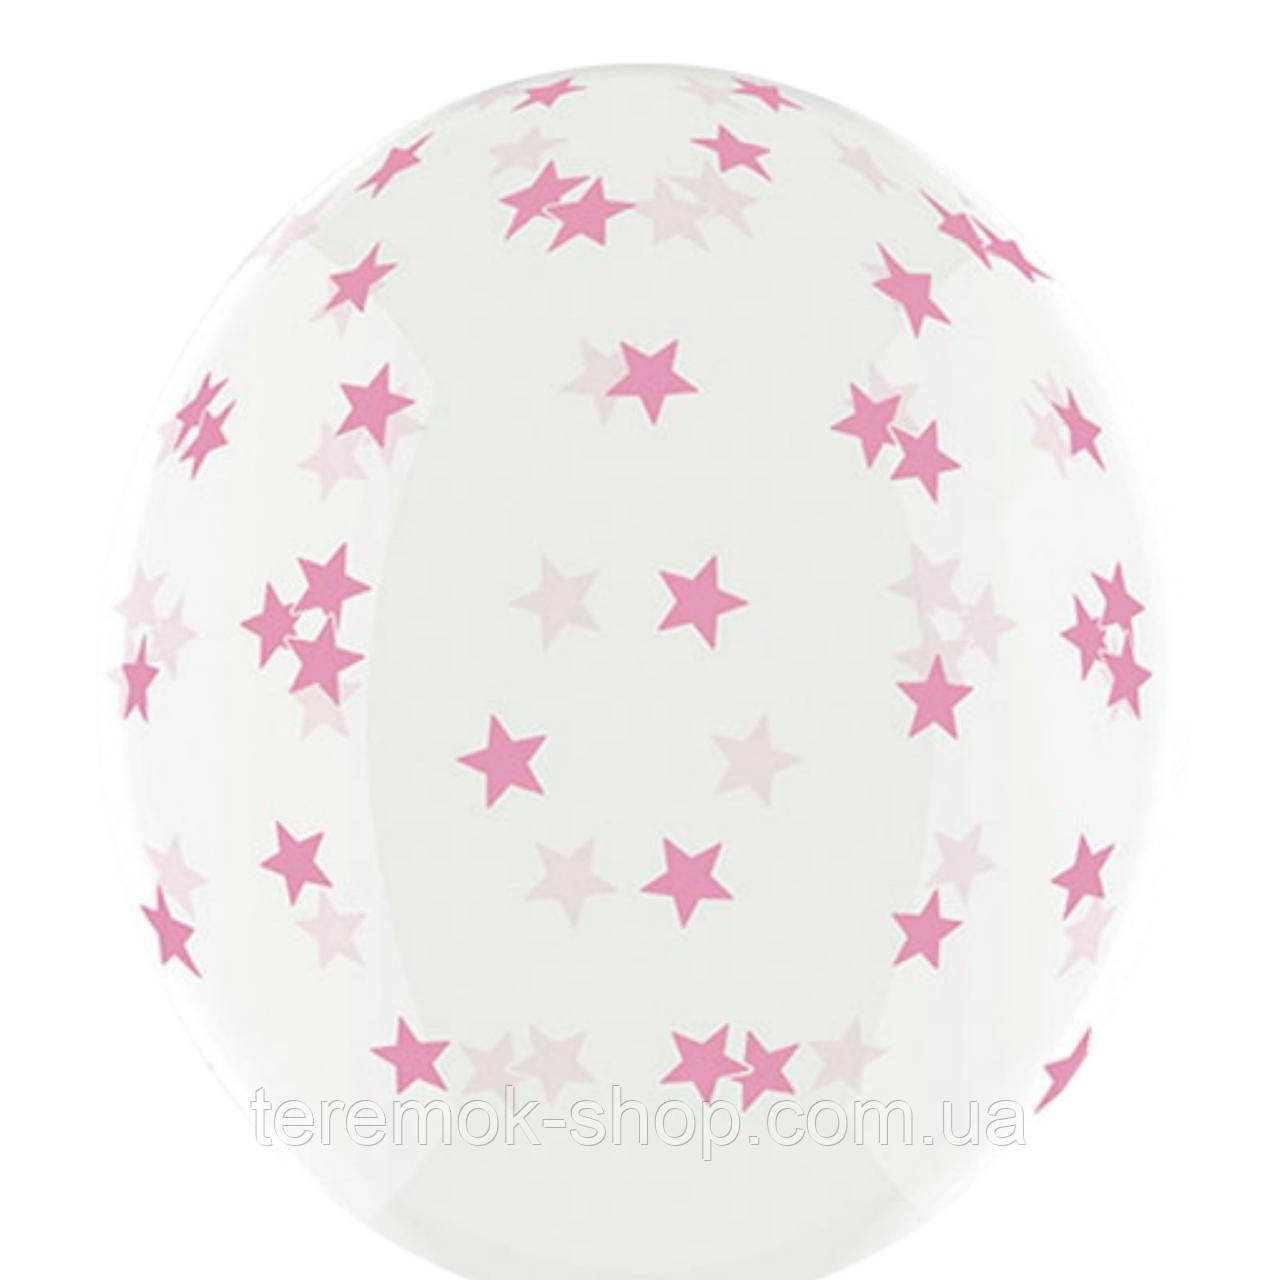 Воздушные шары Розовые звезды  12" 30 см  (BelBal) поштучно